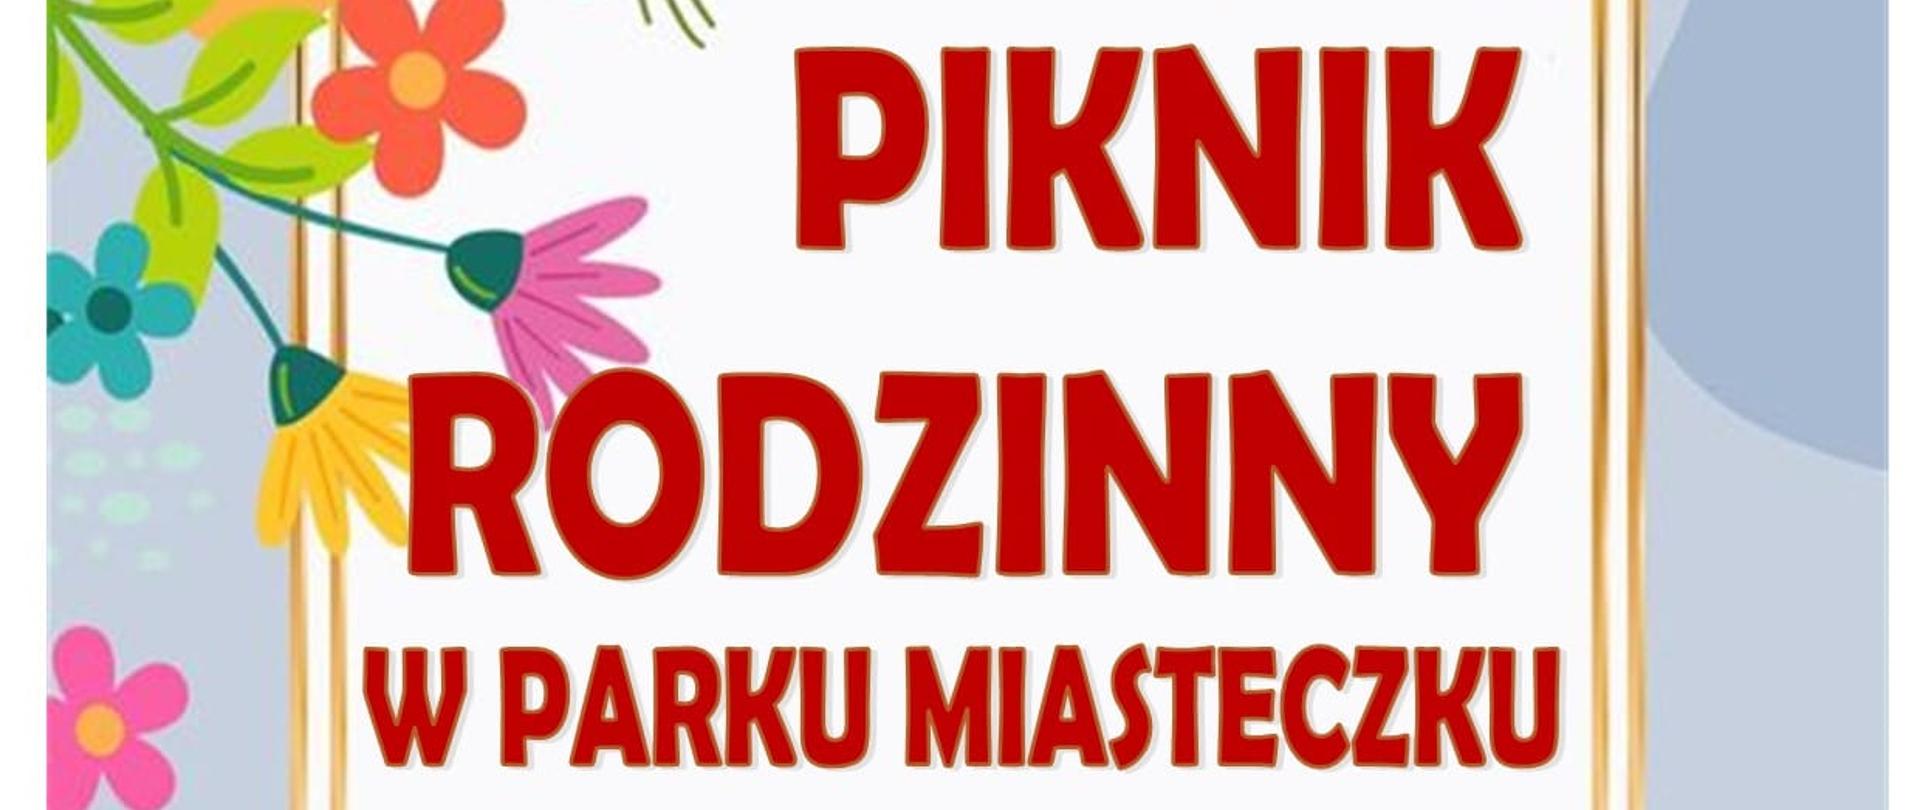 kolorowy plakat czerwone litery Piknik Rodzinny na górze w rogu i na dole kolorowe kwiaty 